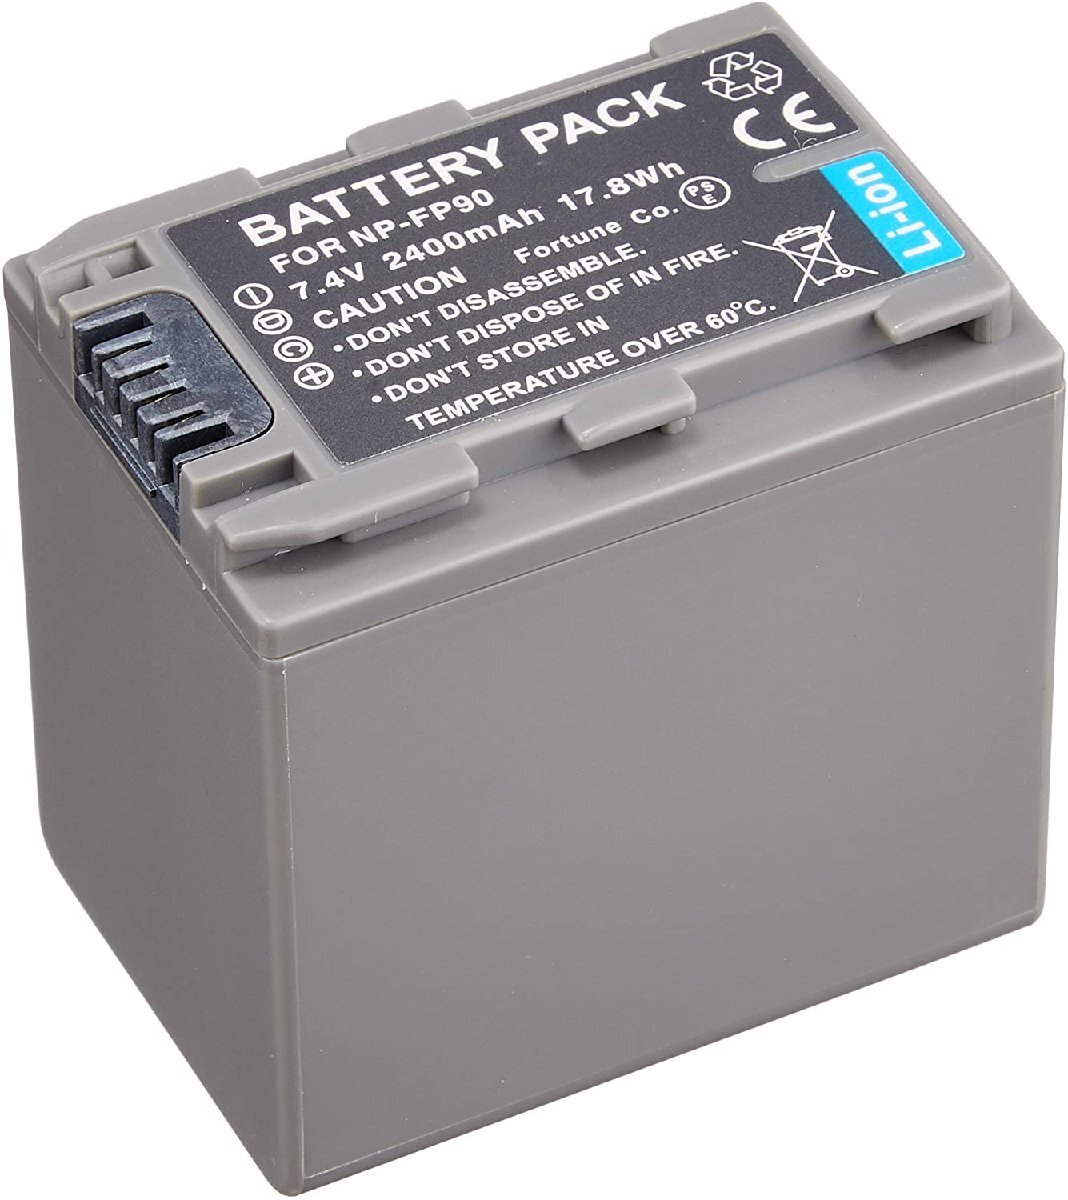 セットDC04 対応USB充電器 と Sony NP-FP90 互換バッテリー_画像4